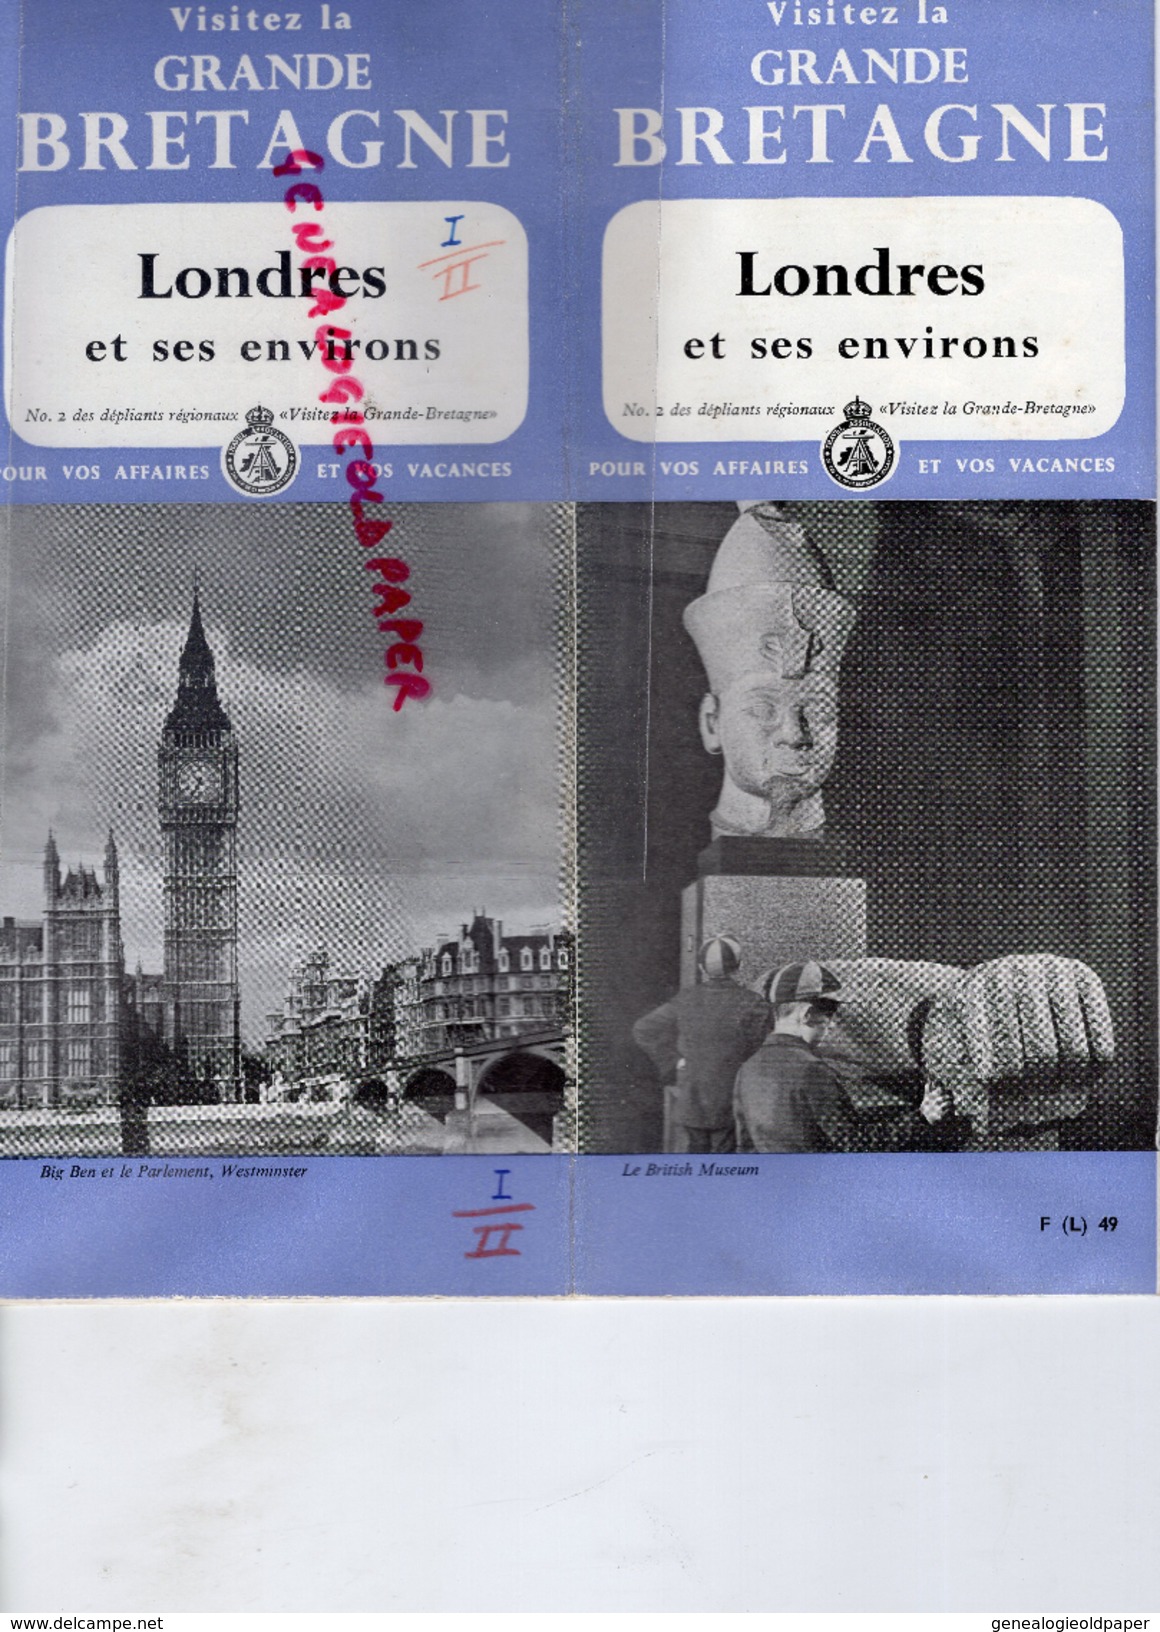 ANGLETERRE -LONDRES ET SES ENVIRONS-BRITISH MUSEUM-BIG BEN- GALERIE TATE-WHITEHALL-WESTMINTER-HOLBORN- LONDON BRIDGE - Dépliants Touristiques